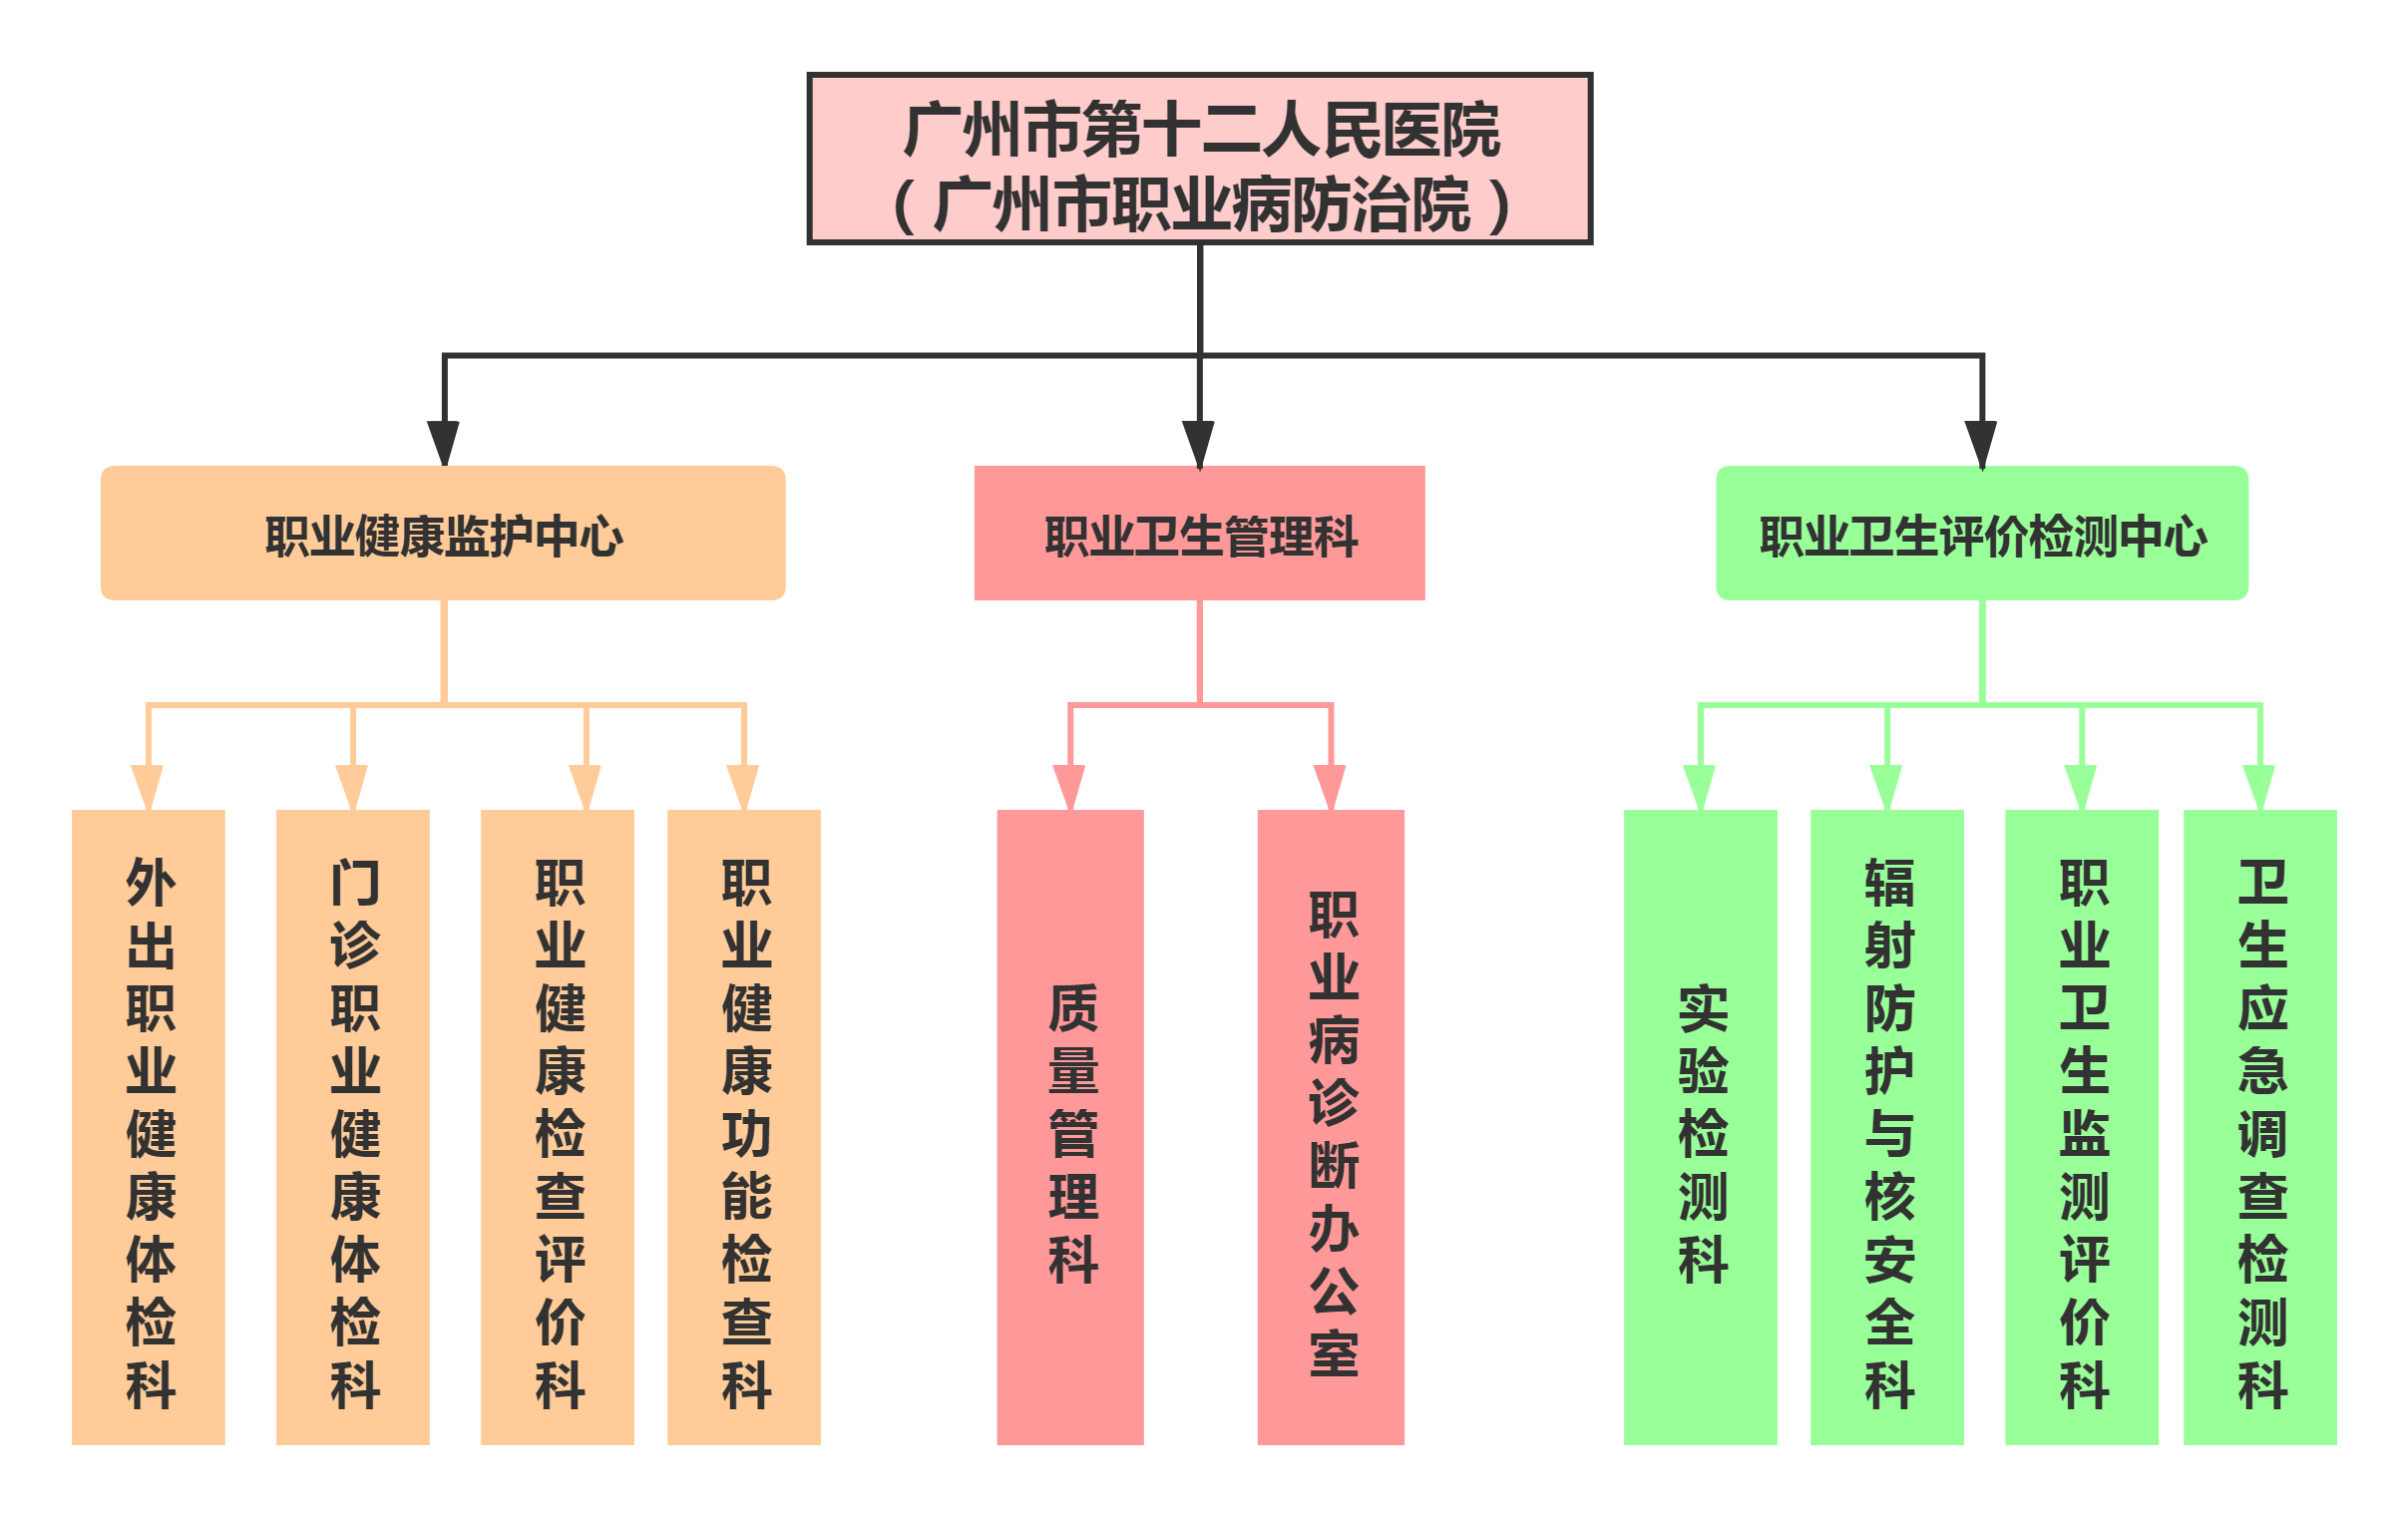 广州市职业病防治院组织架构图